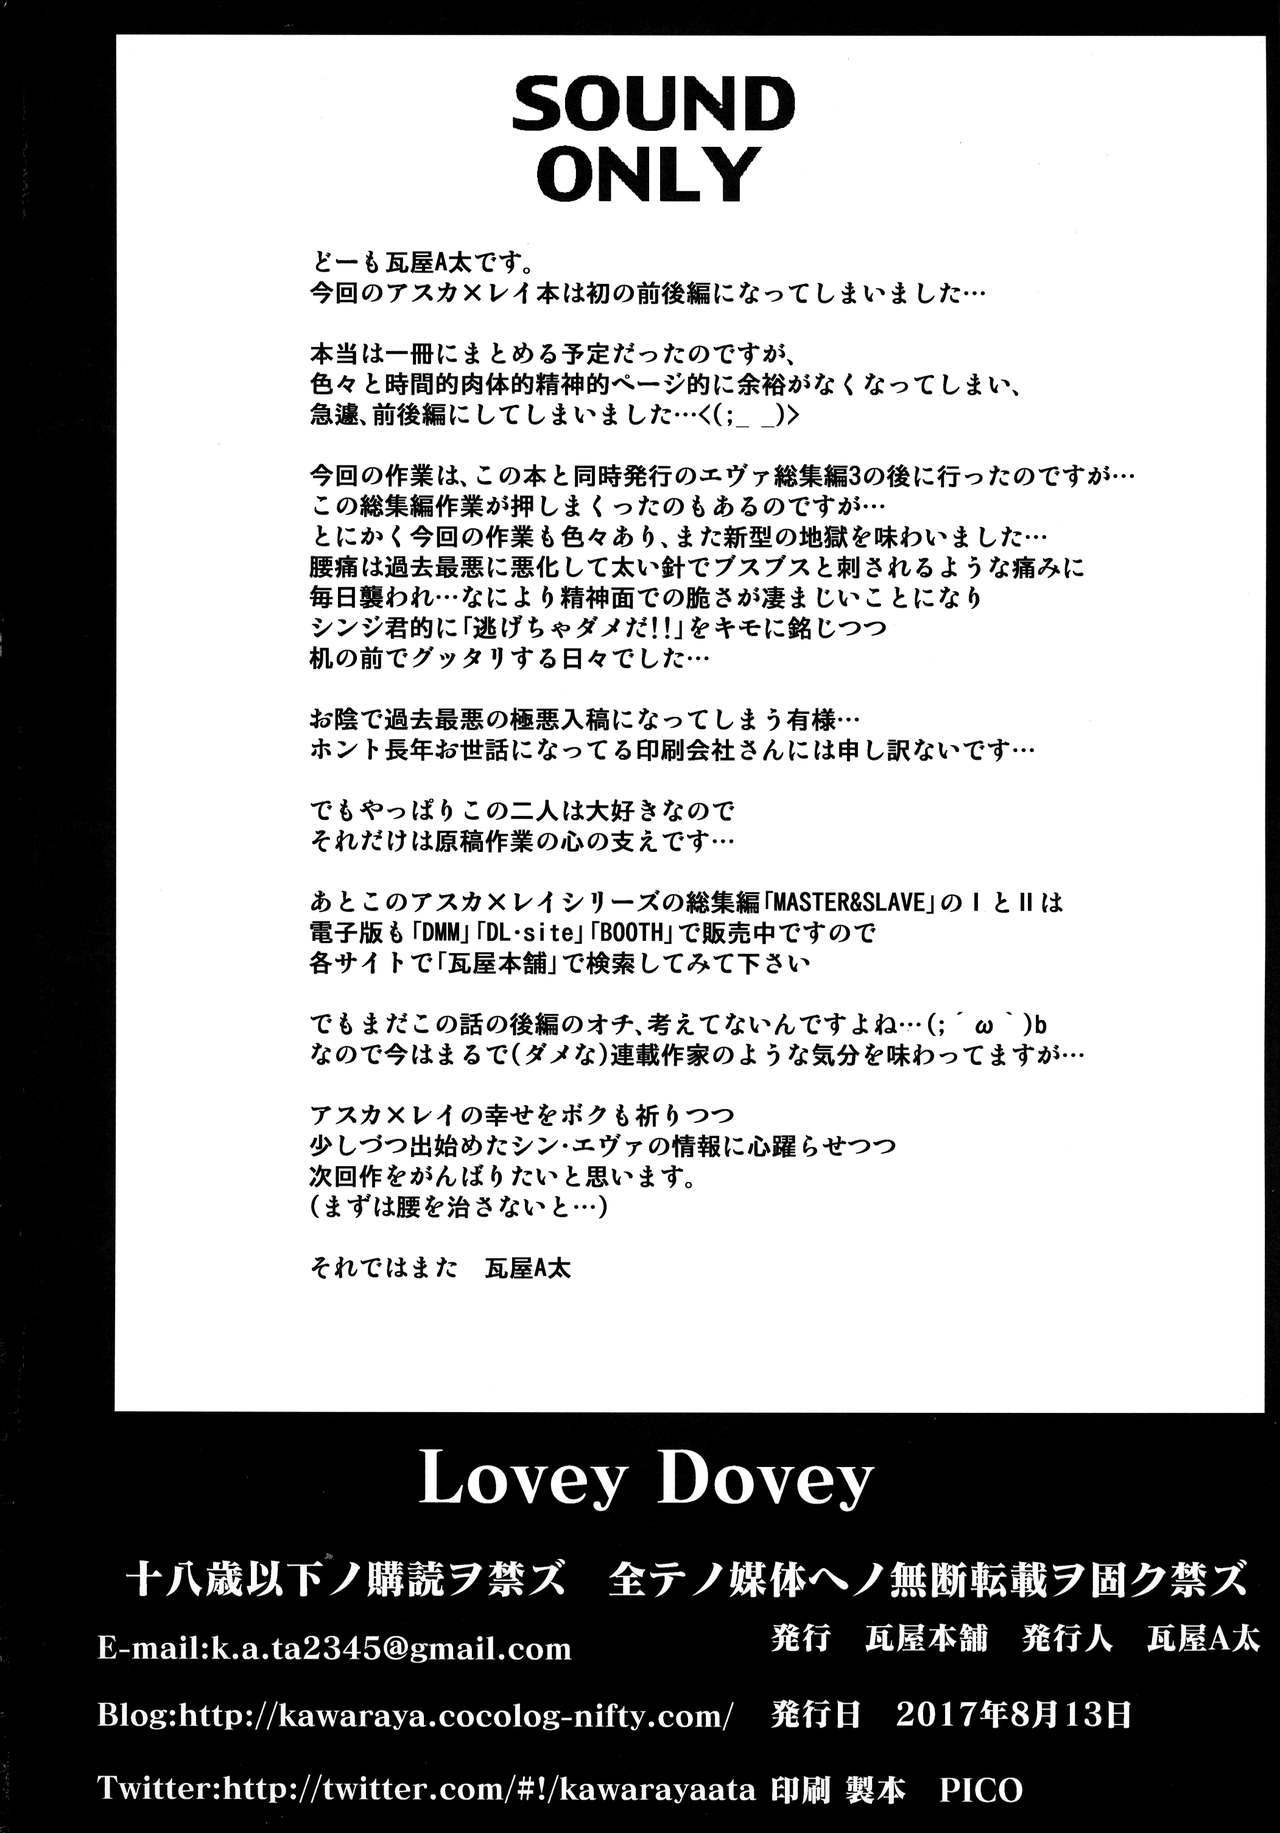 Lovey Dovey = SW =